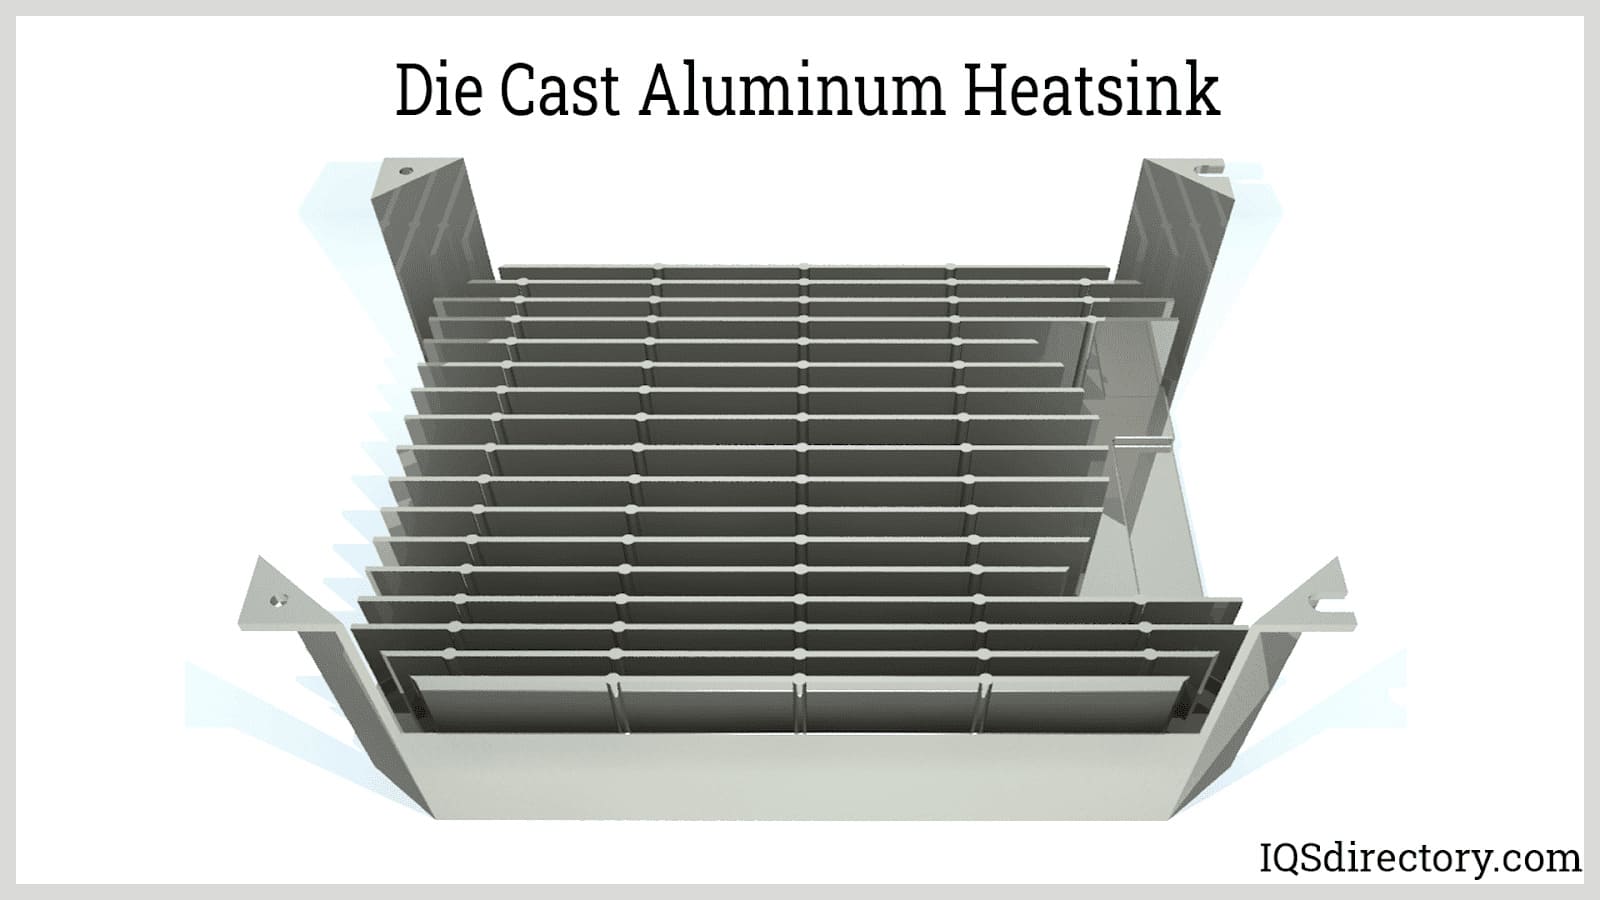 Die Cast Aluminum Heatsink